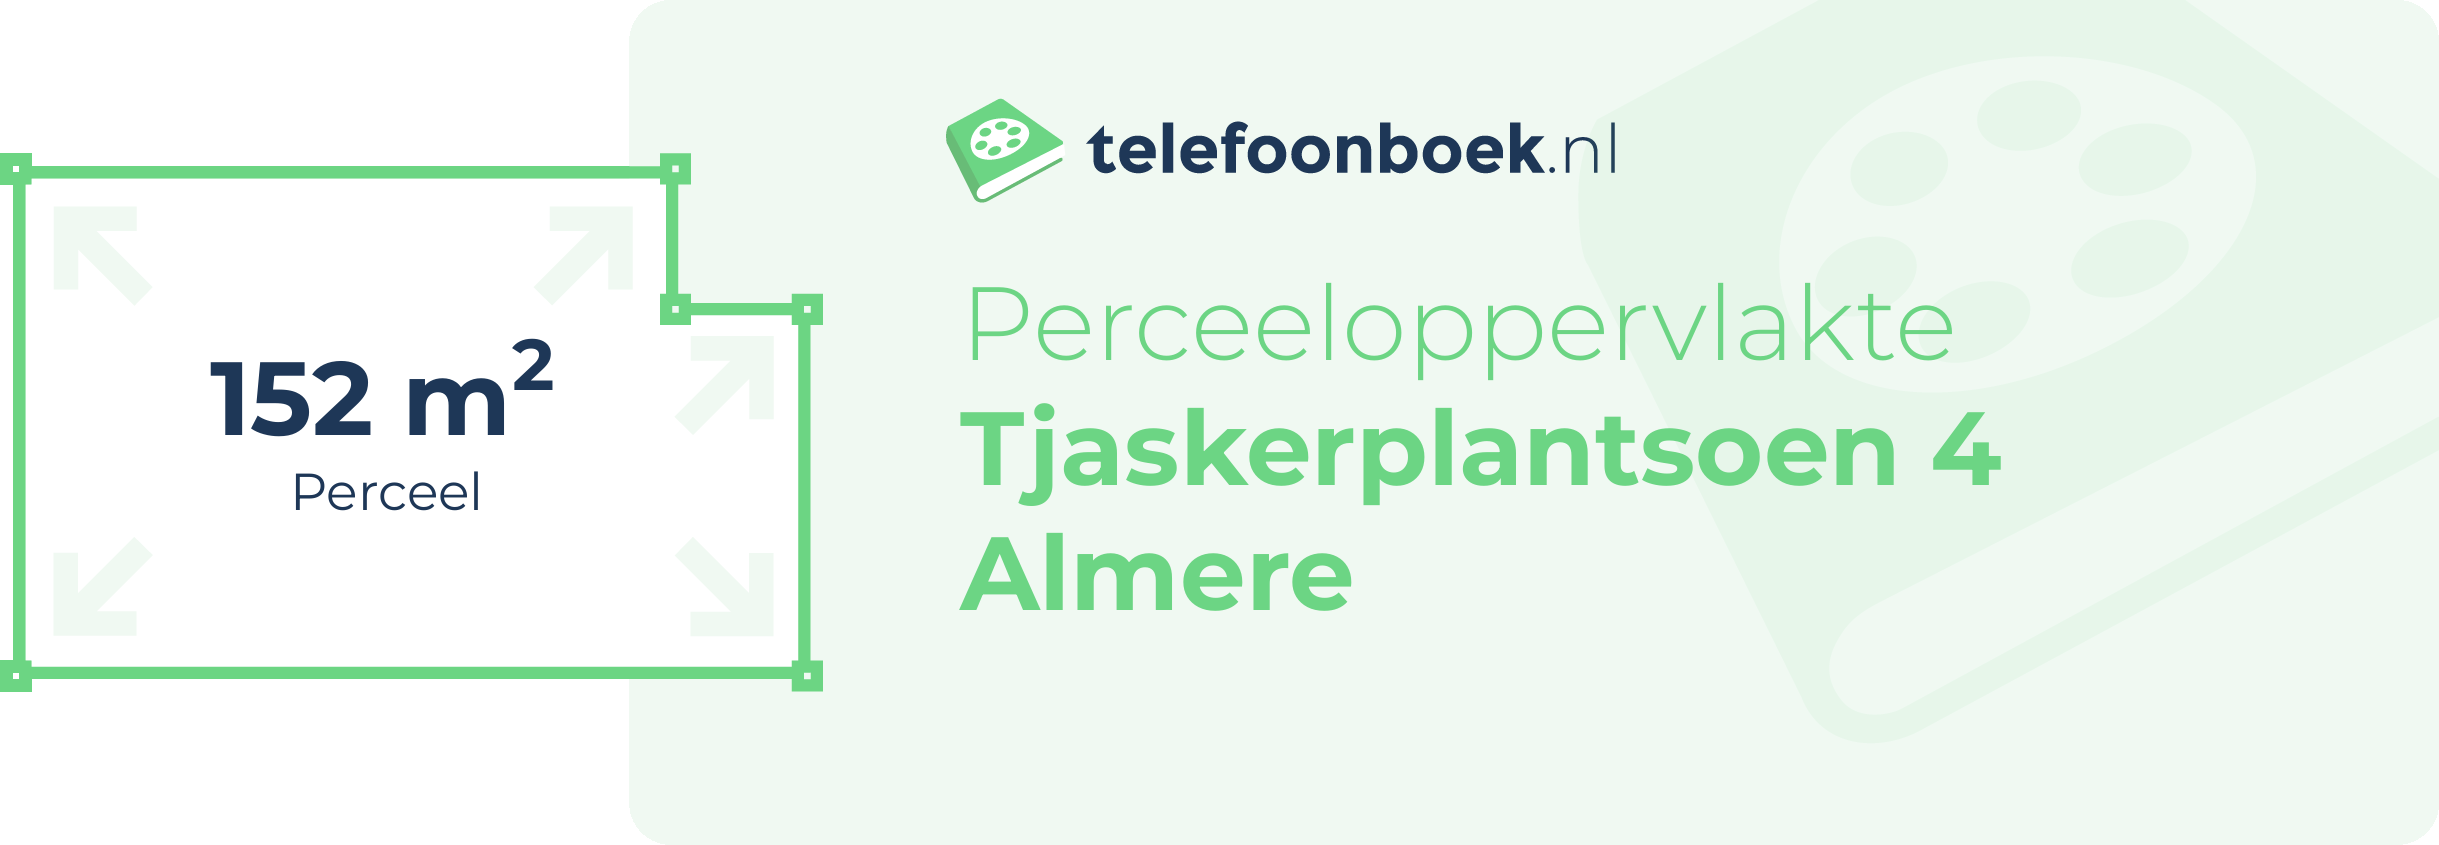 Perceeloppervlakte Tjaskerplantsoen 4 Almere